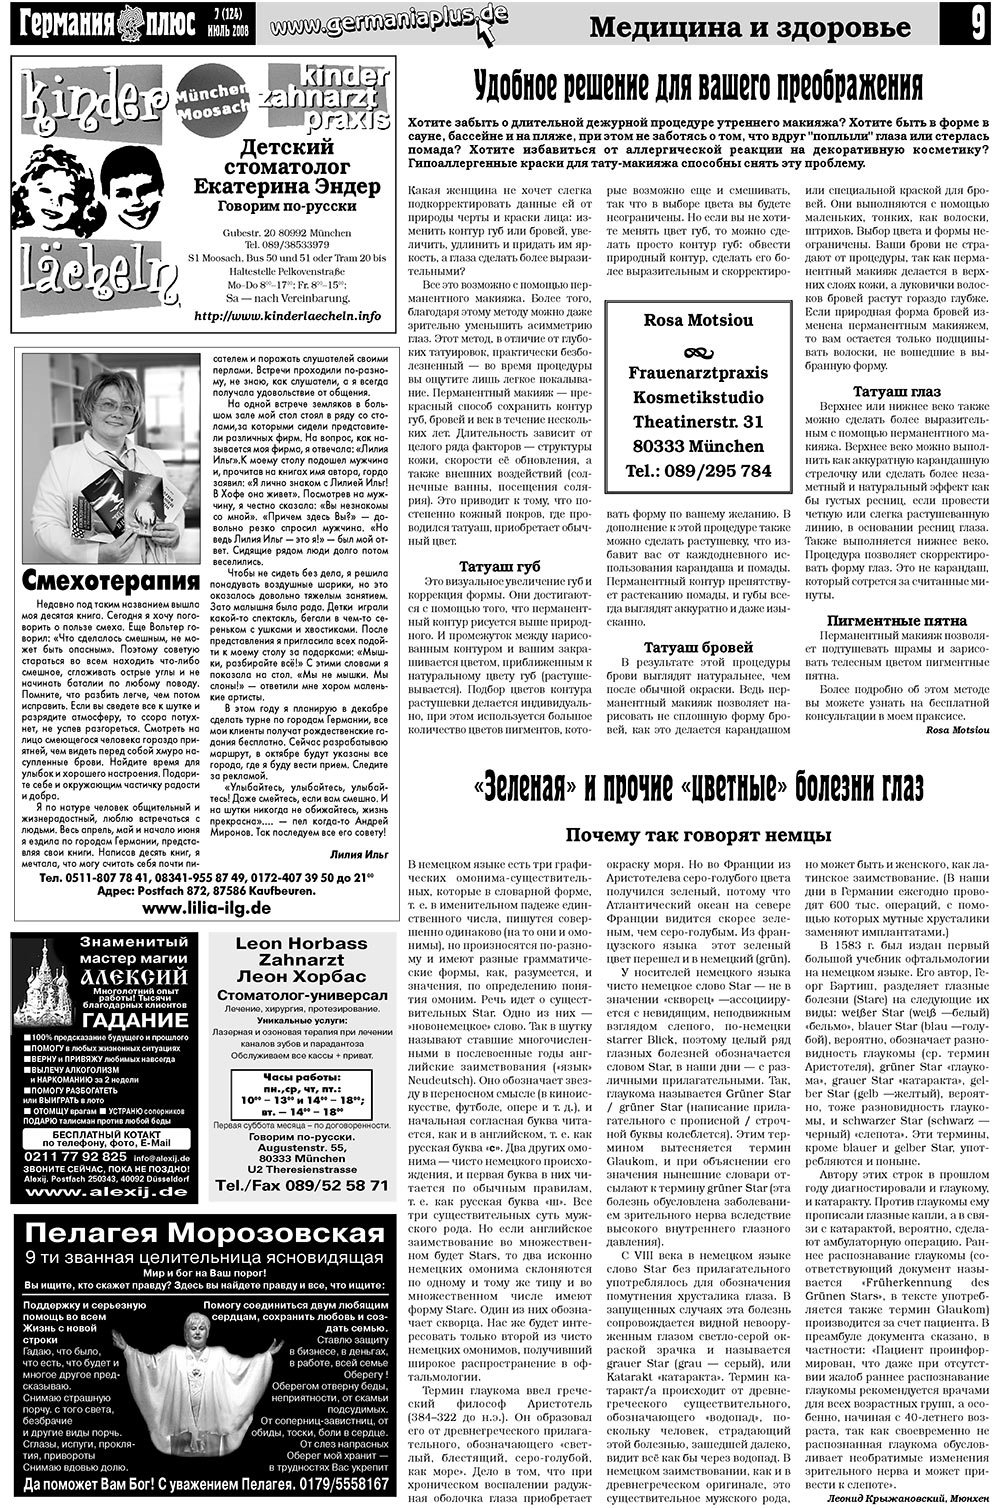 Германия плюс (газета). 2008 год, номер 7, стр. 13